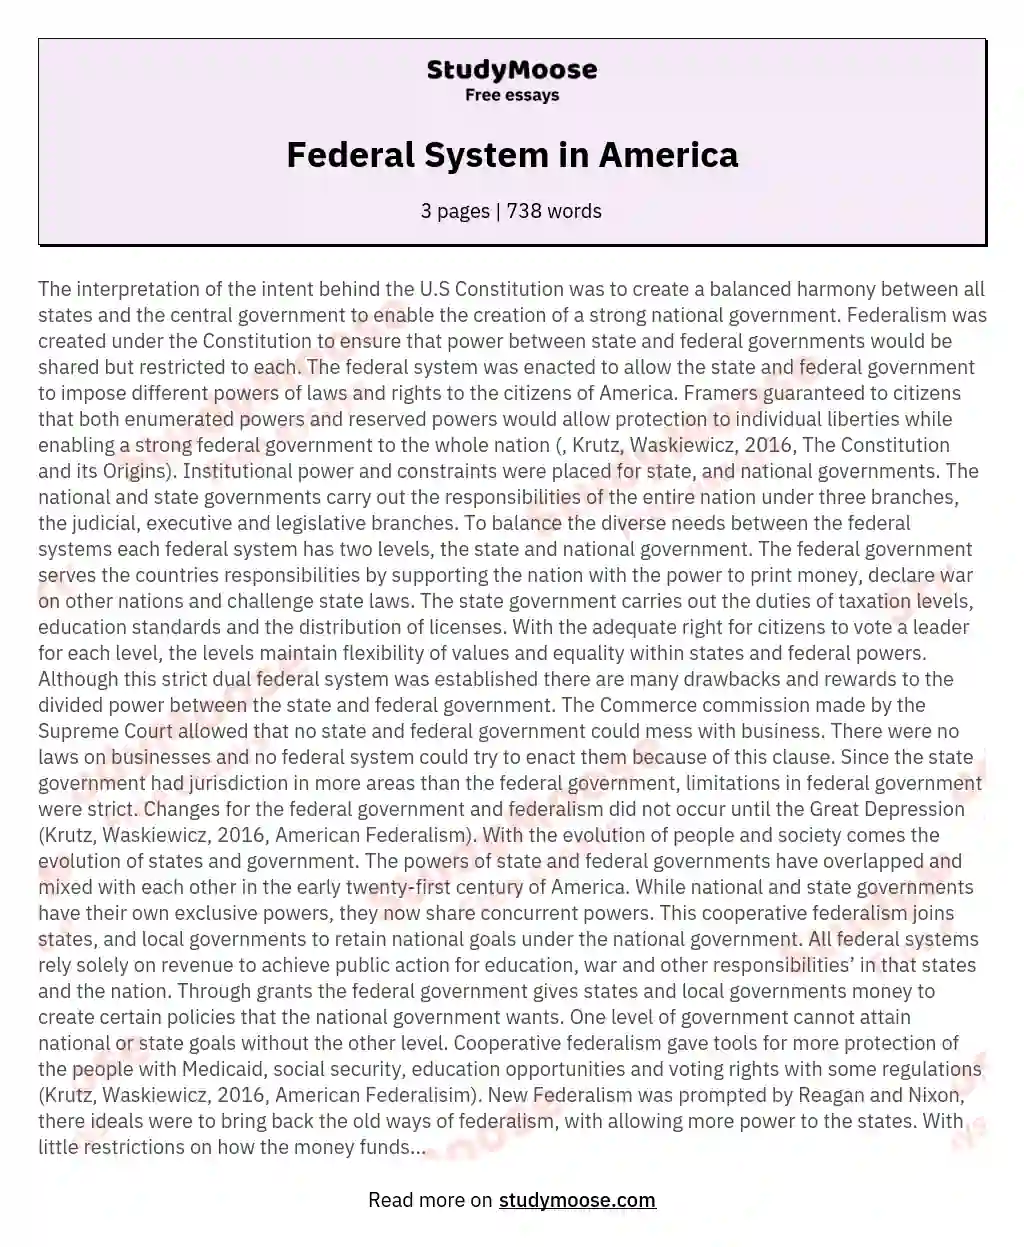 Federal System in America essay